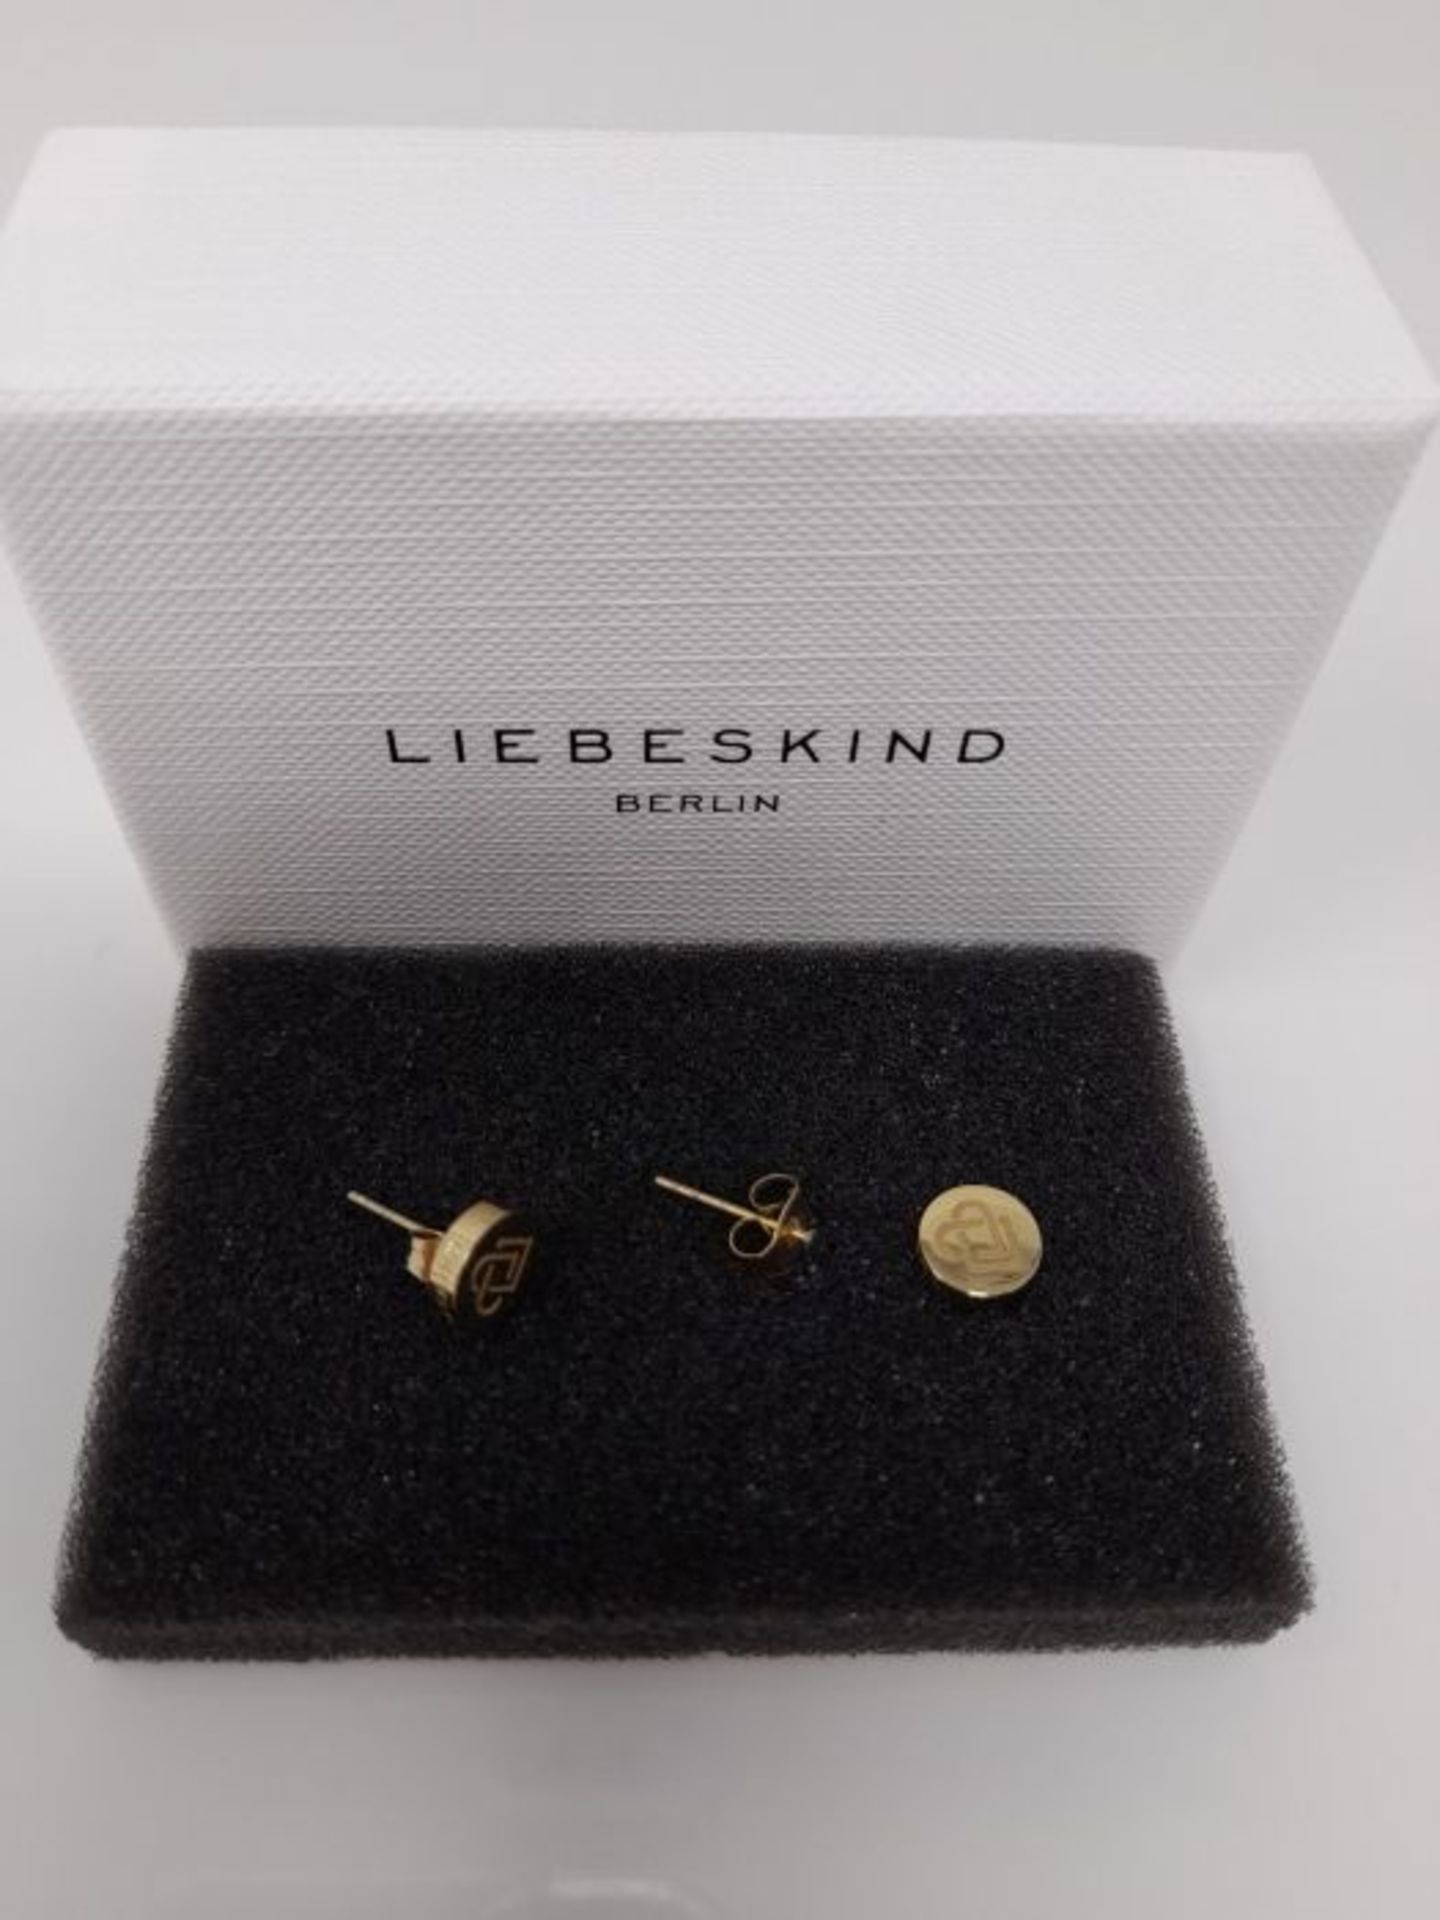 [CRACKED] Liebeskind Berlin Women's Stud Earrings - Matt Steel - LJ 0078 E - 20 - Image 3 of 3